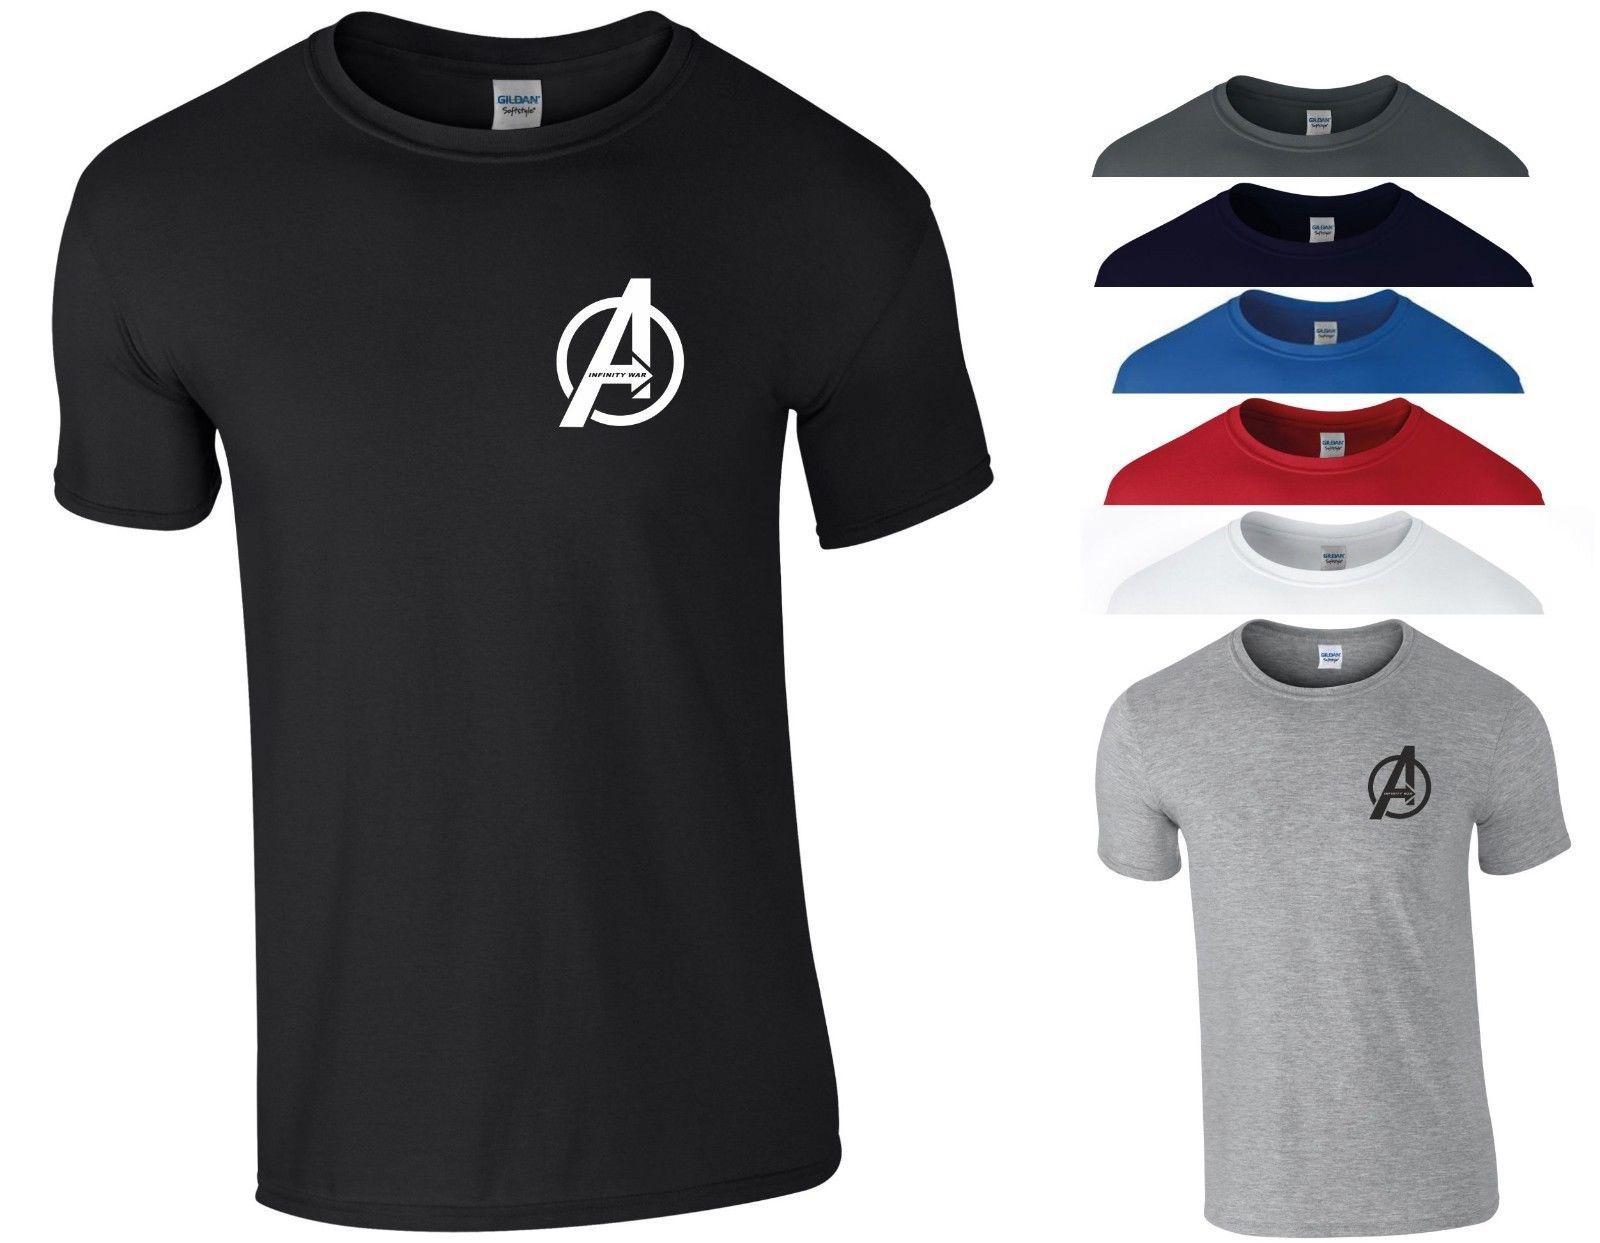 Zu Small Logo - Details Zu Avengers Infinity War T Shirt Small A Logo Marvel Iron